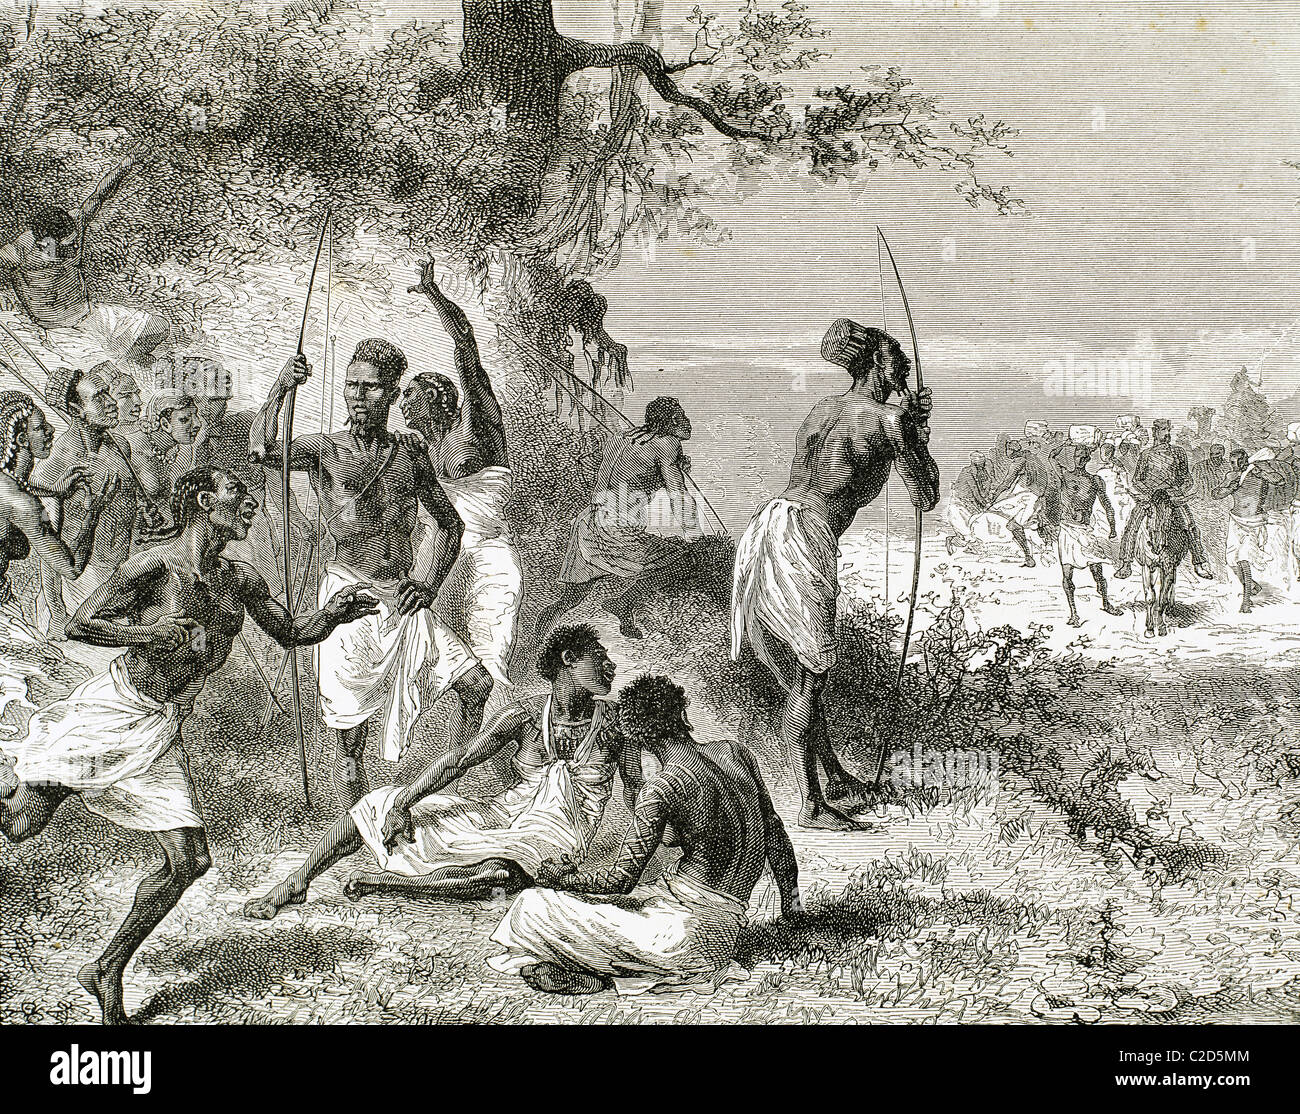 Storia dell'Africa. La carovana del dottor Livingstone ha trovato un gruppo di indigeni armati. Incisione di A. Beatrand. 1882. Foto Stock